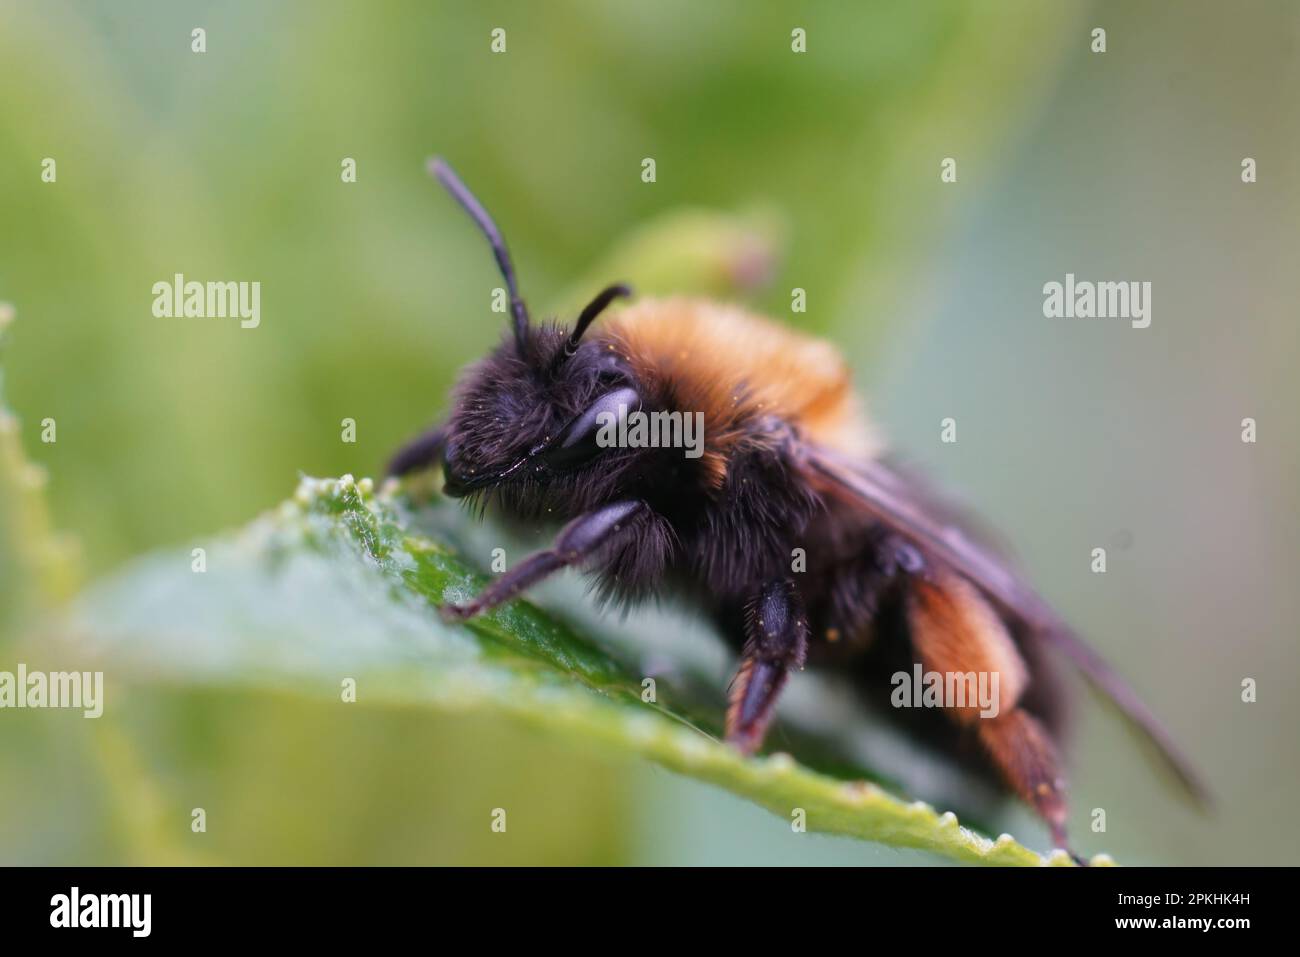 Detaillierte Nahaufnahme einer weiblichen Clarkes Bergbaubiene, Andrena Clarkella, die auf einem grünen Blatt sitzt Stockfoto